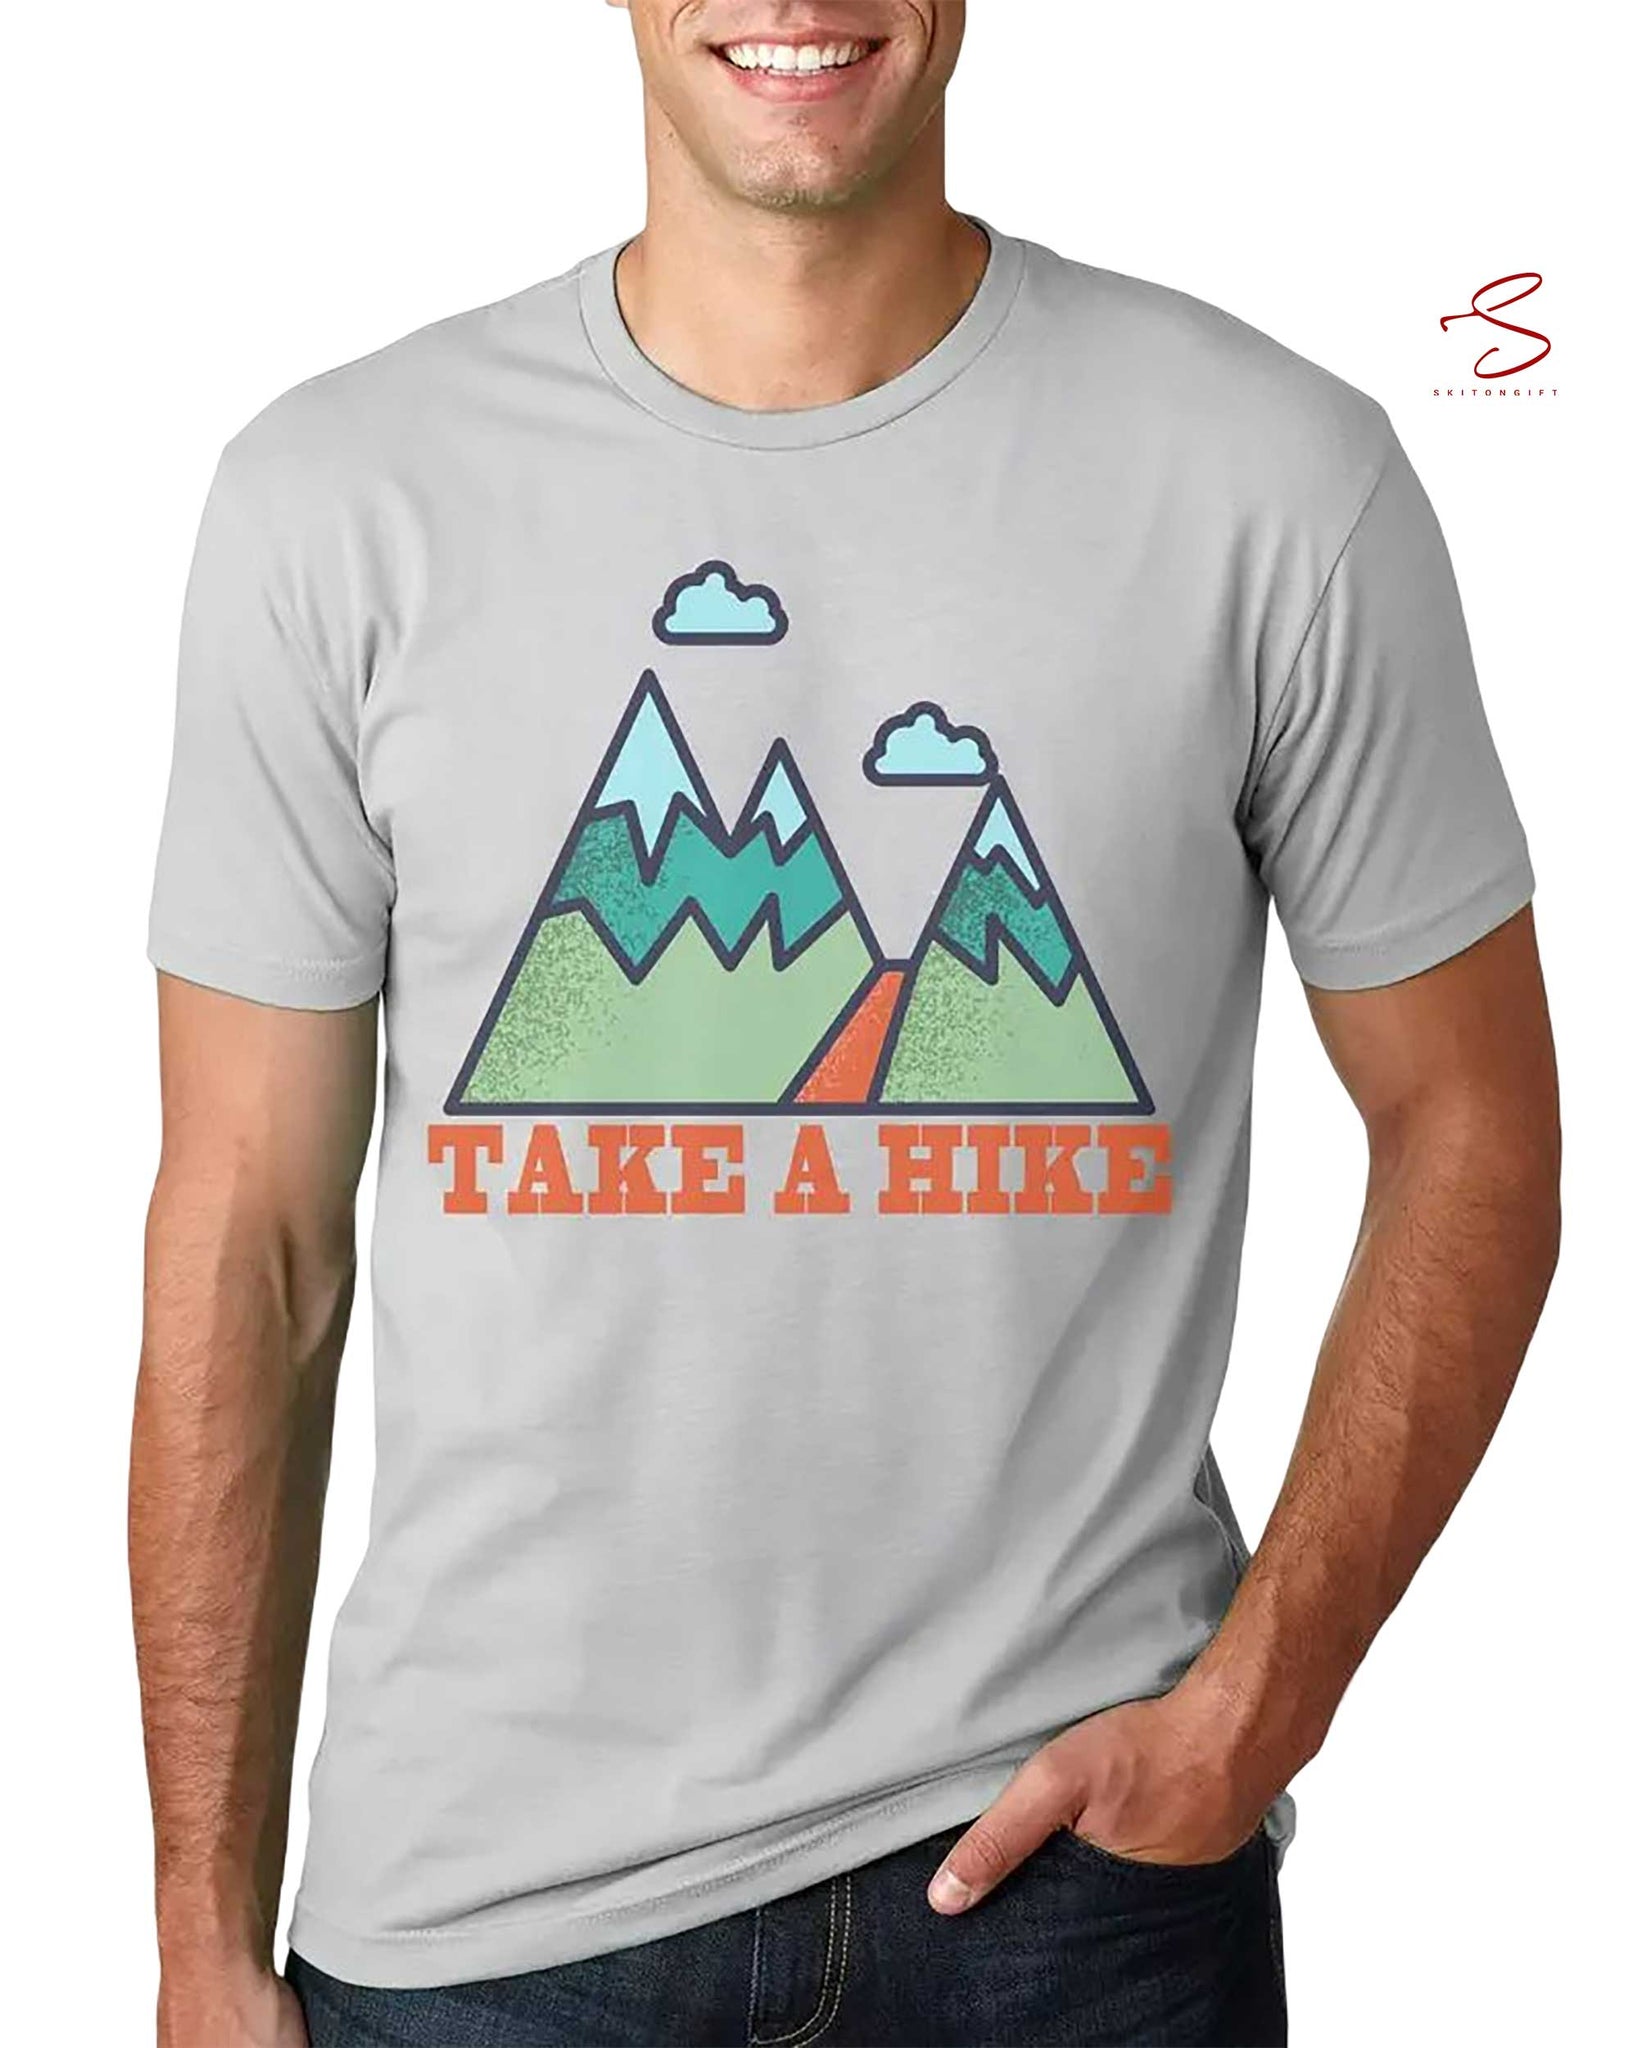 Skitongift Hiking Shirts Hiking Tshirt Camping Shirt Graphic Tee Mens